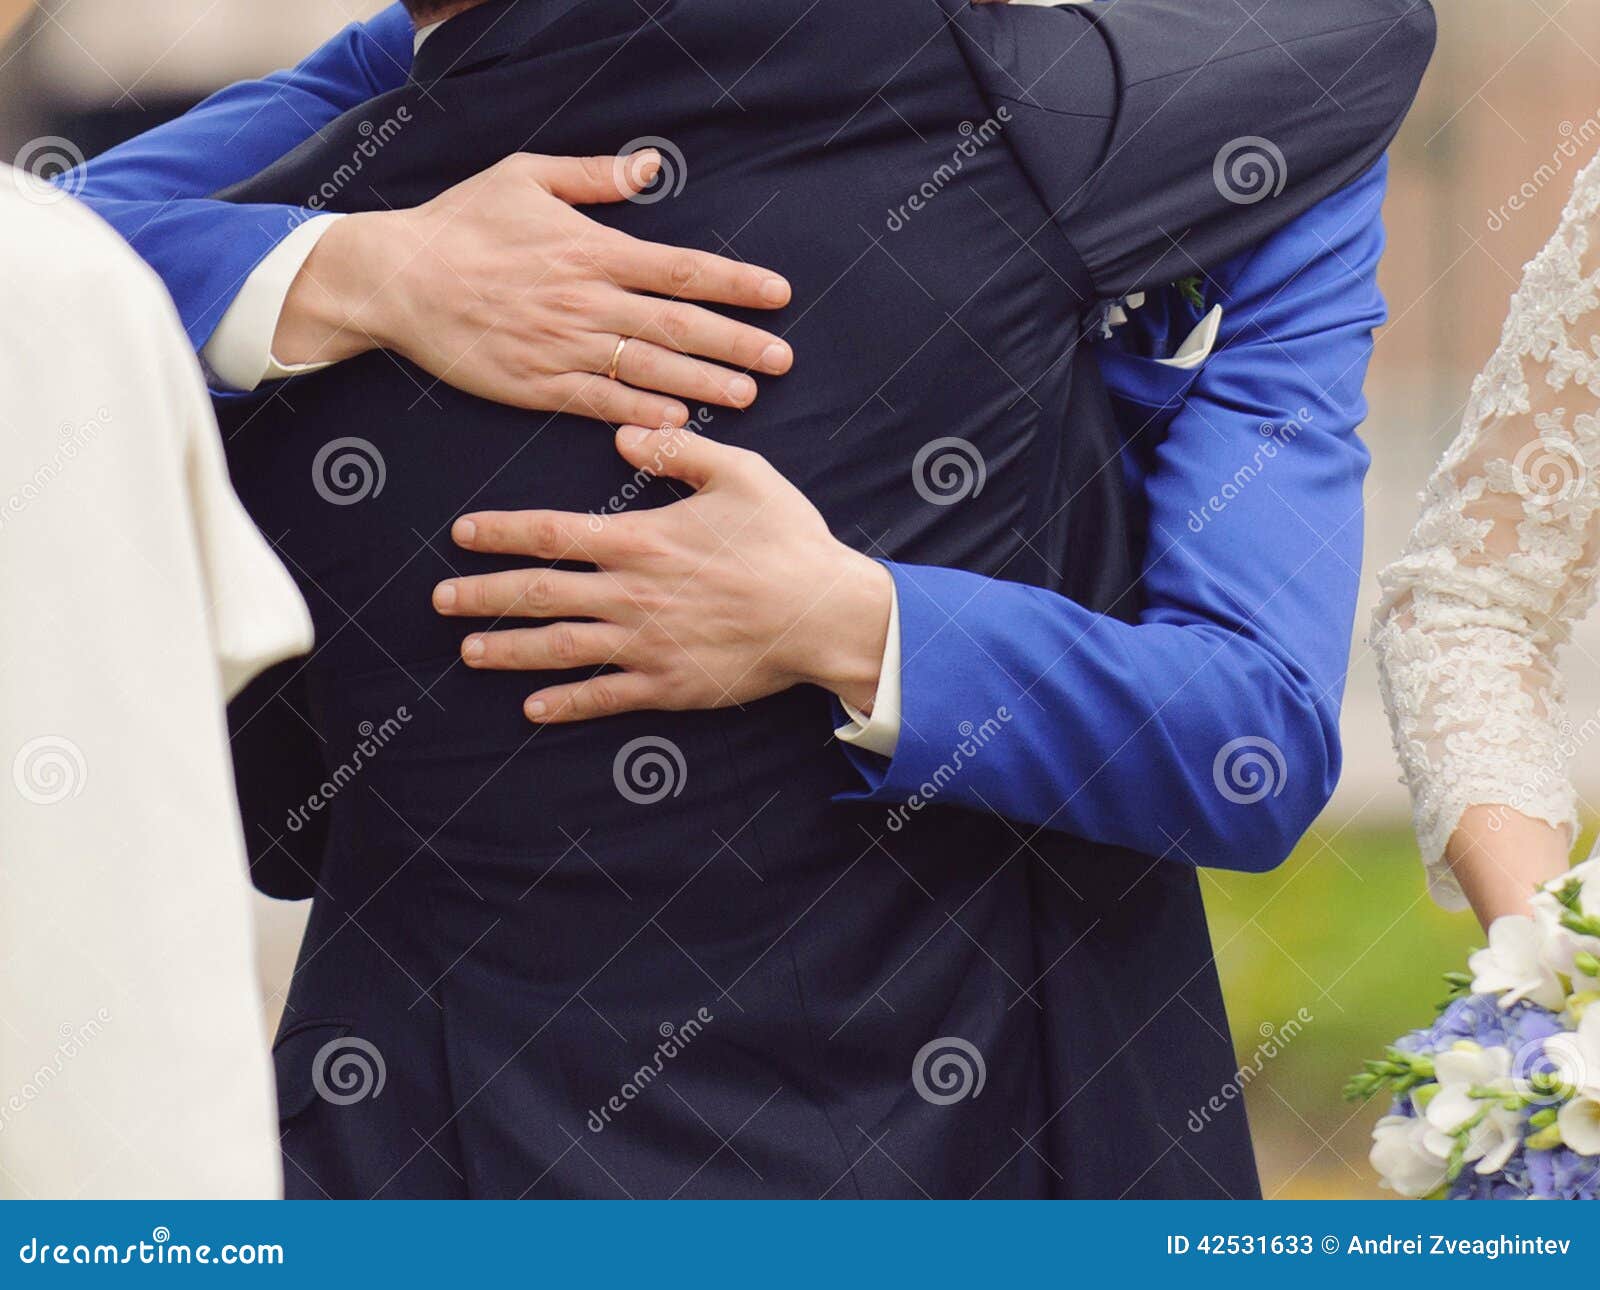 情侣拥抱插画图片下载-正版图片400163396-摄图网